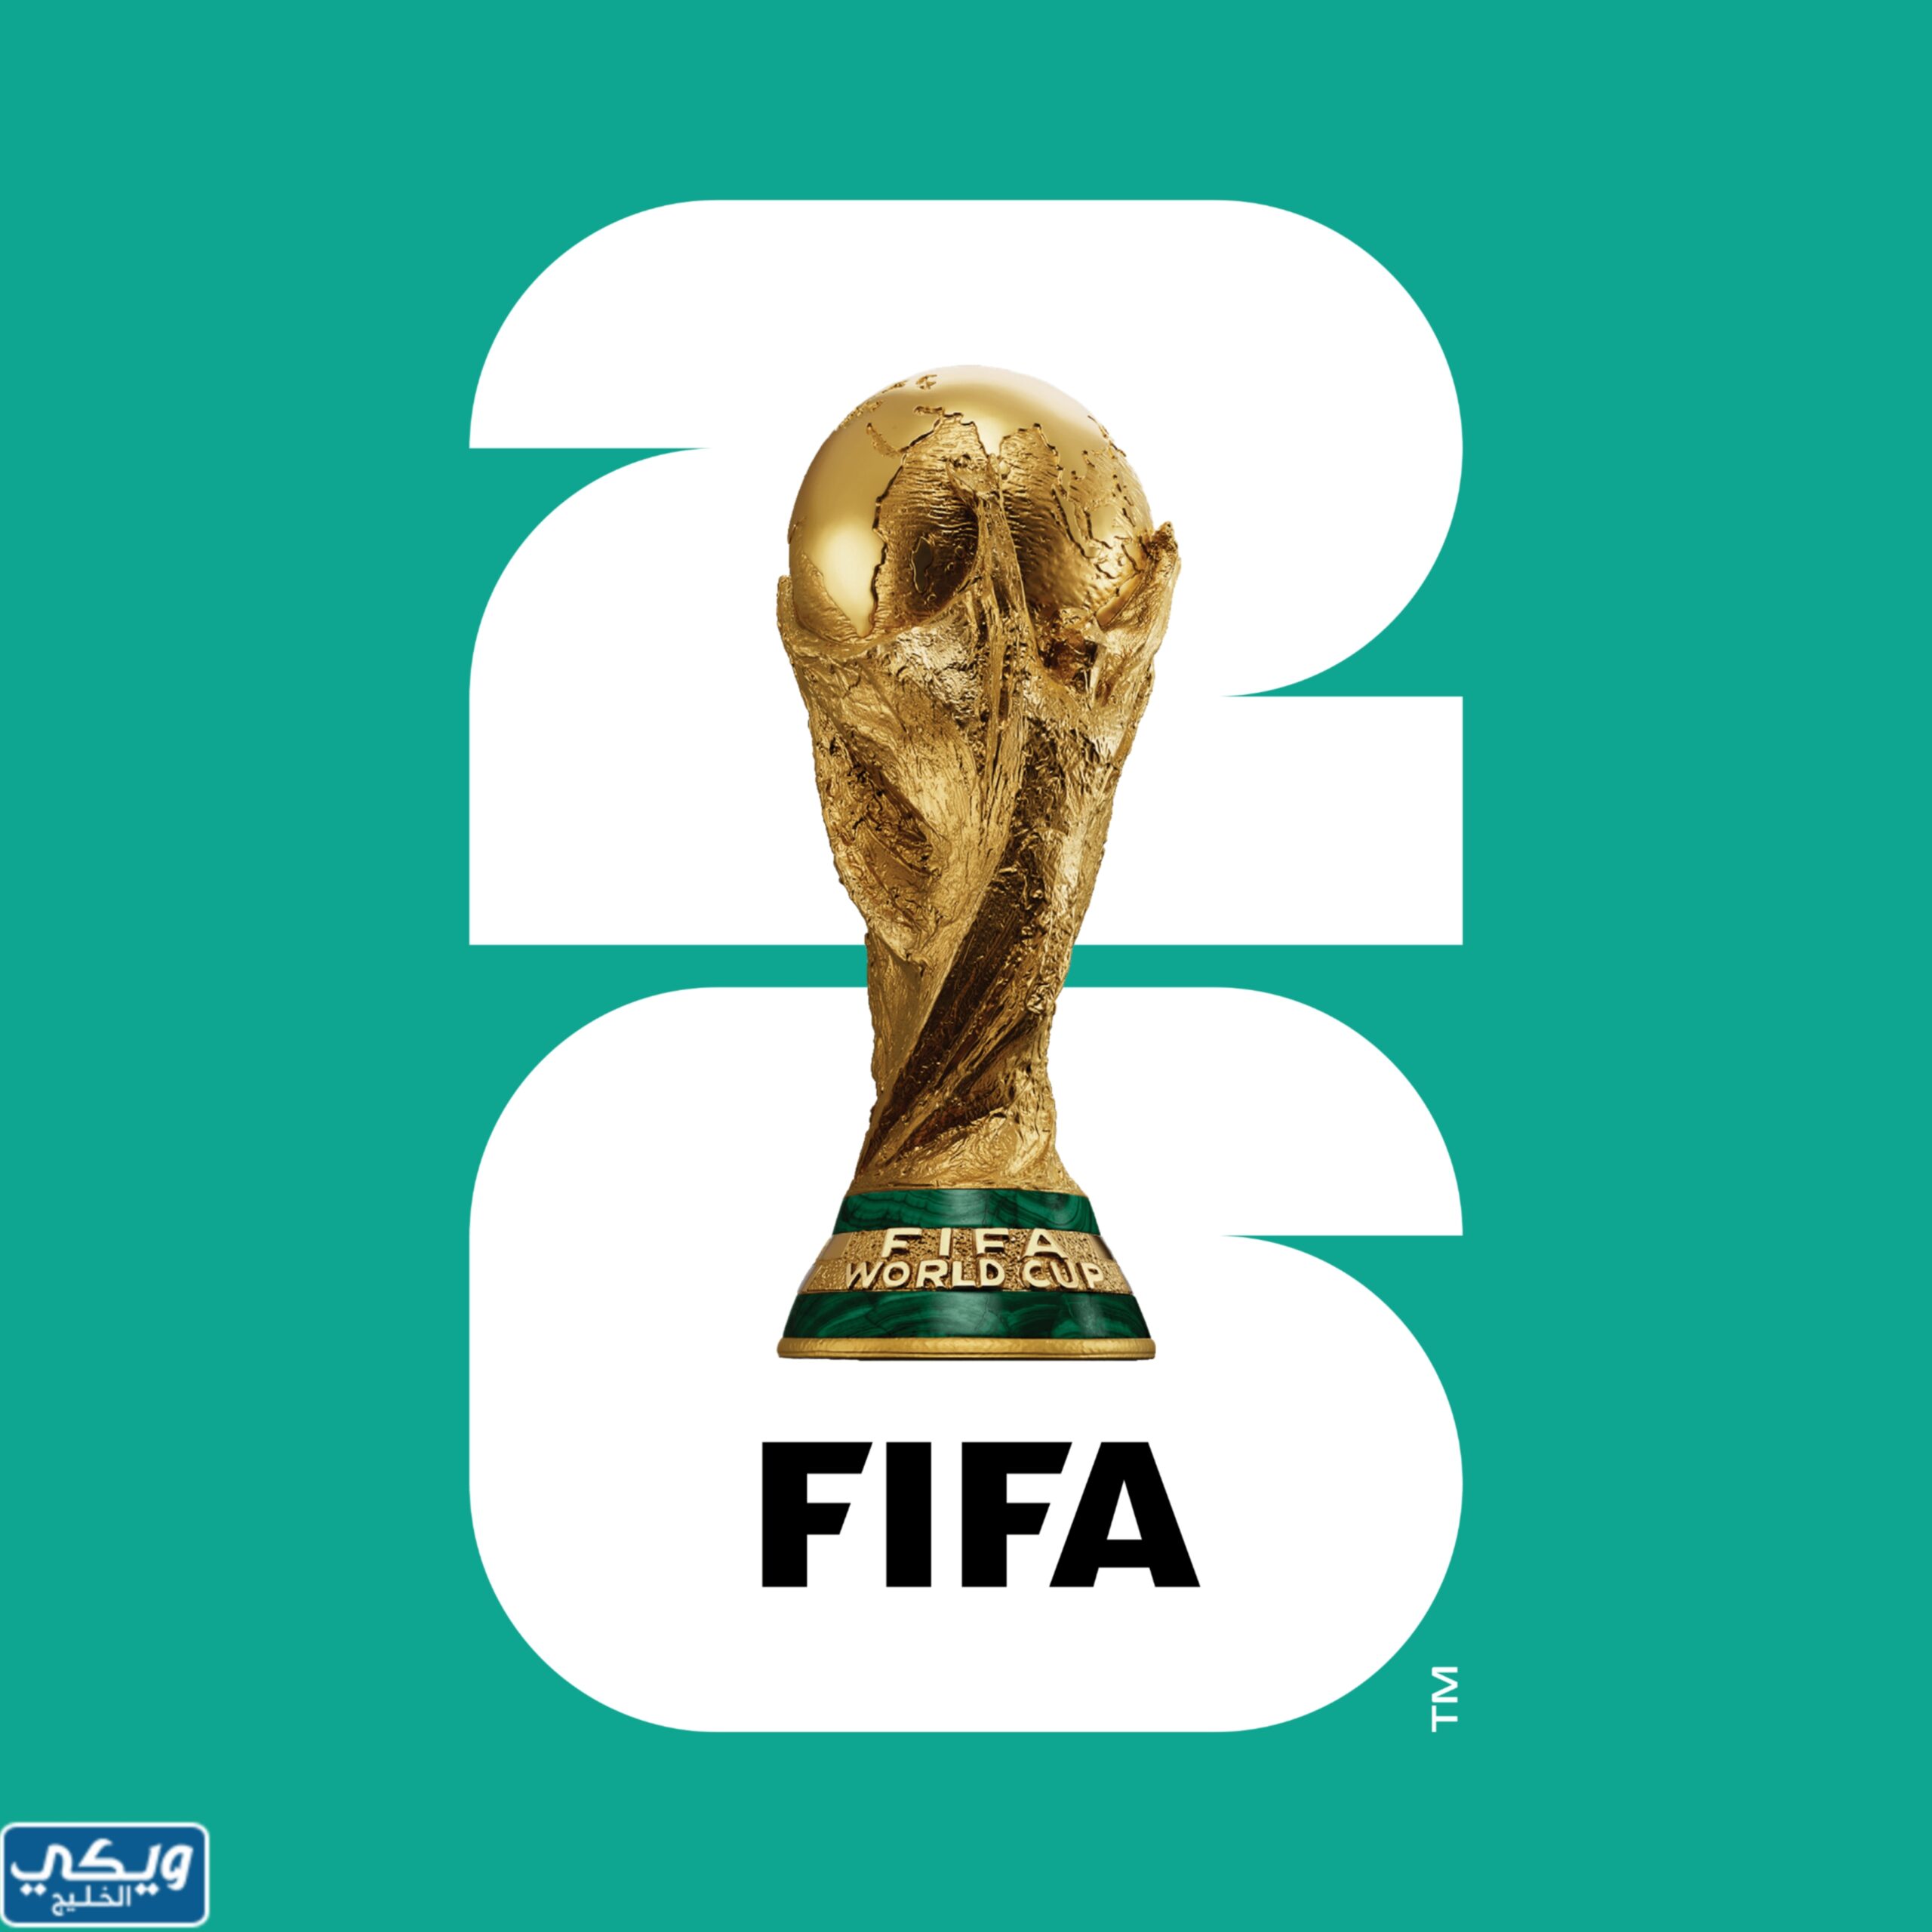 كأس العالم 2026